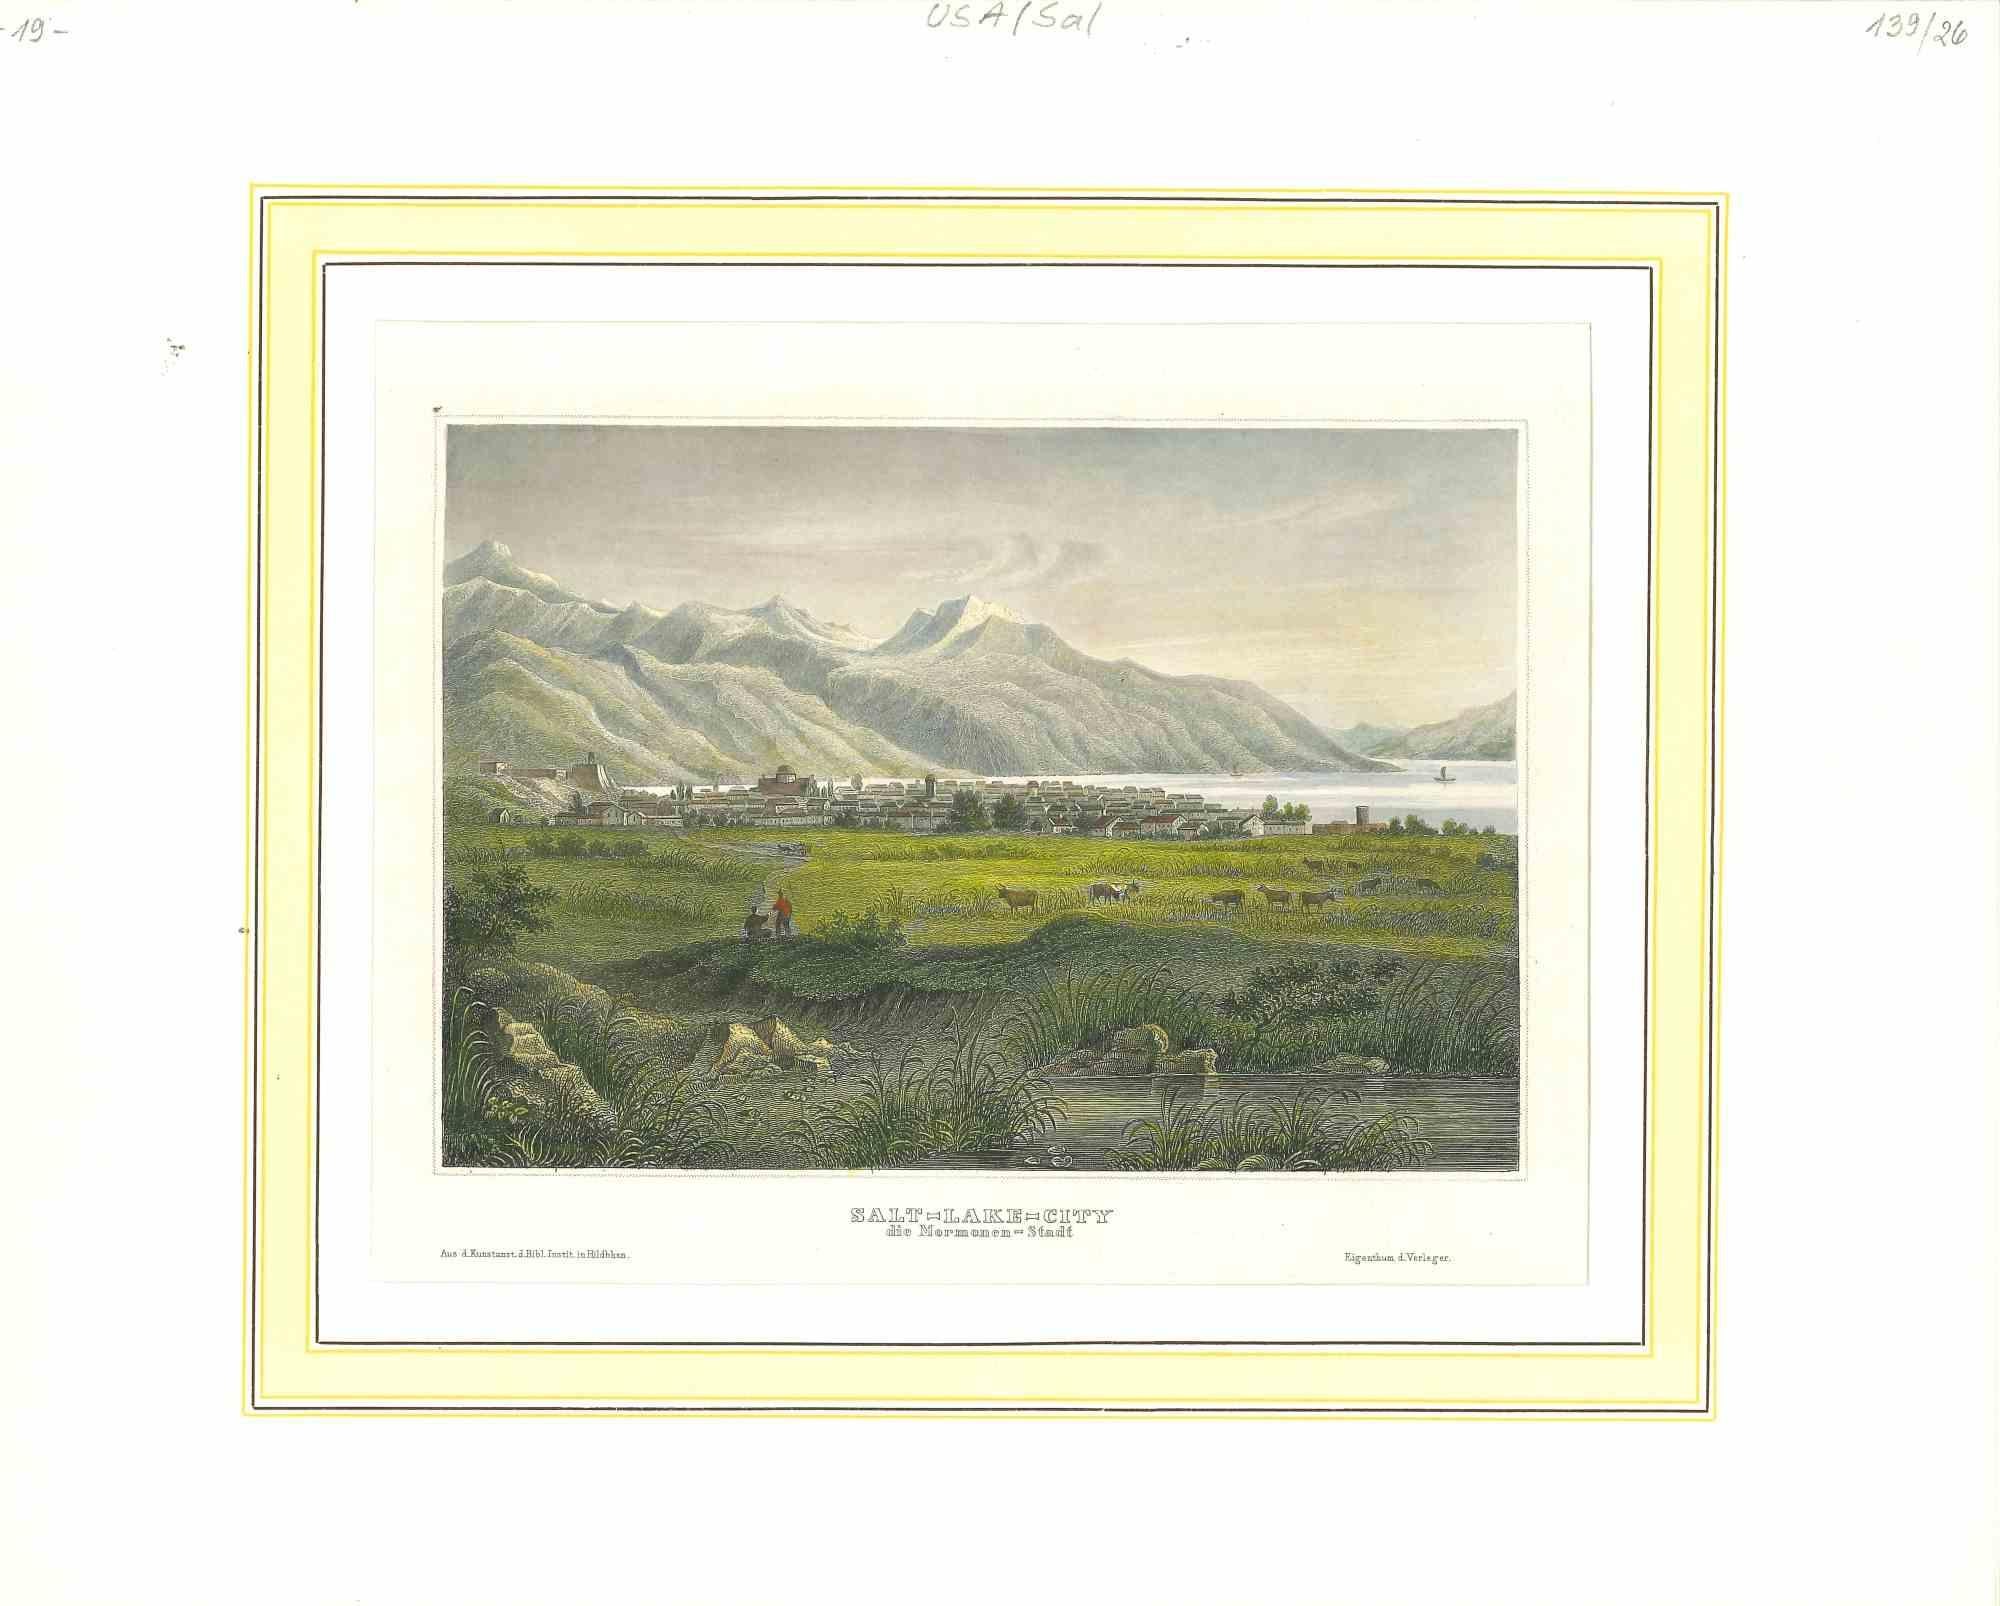 Unknown Landscape Print - Ancient View of Salt Lake City - Original Lithograph - 1850s